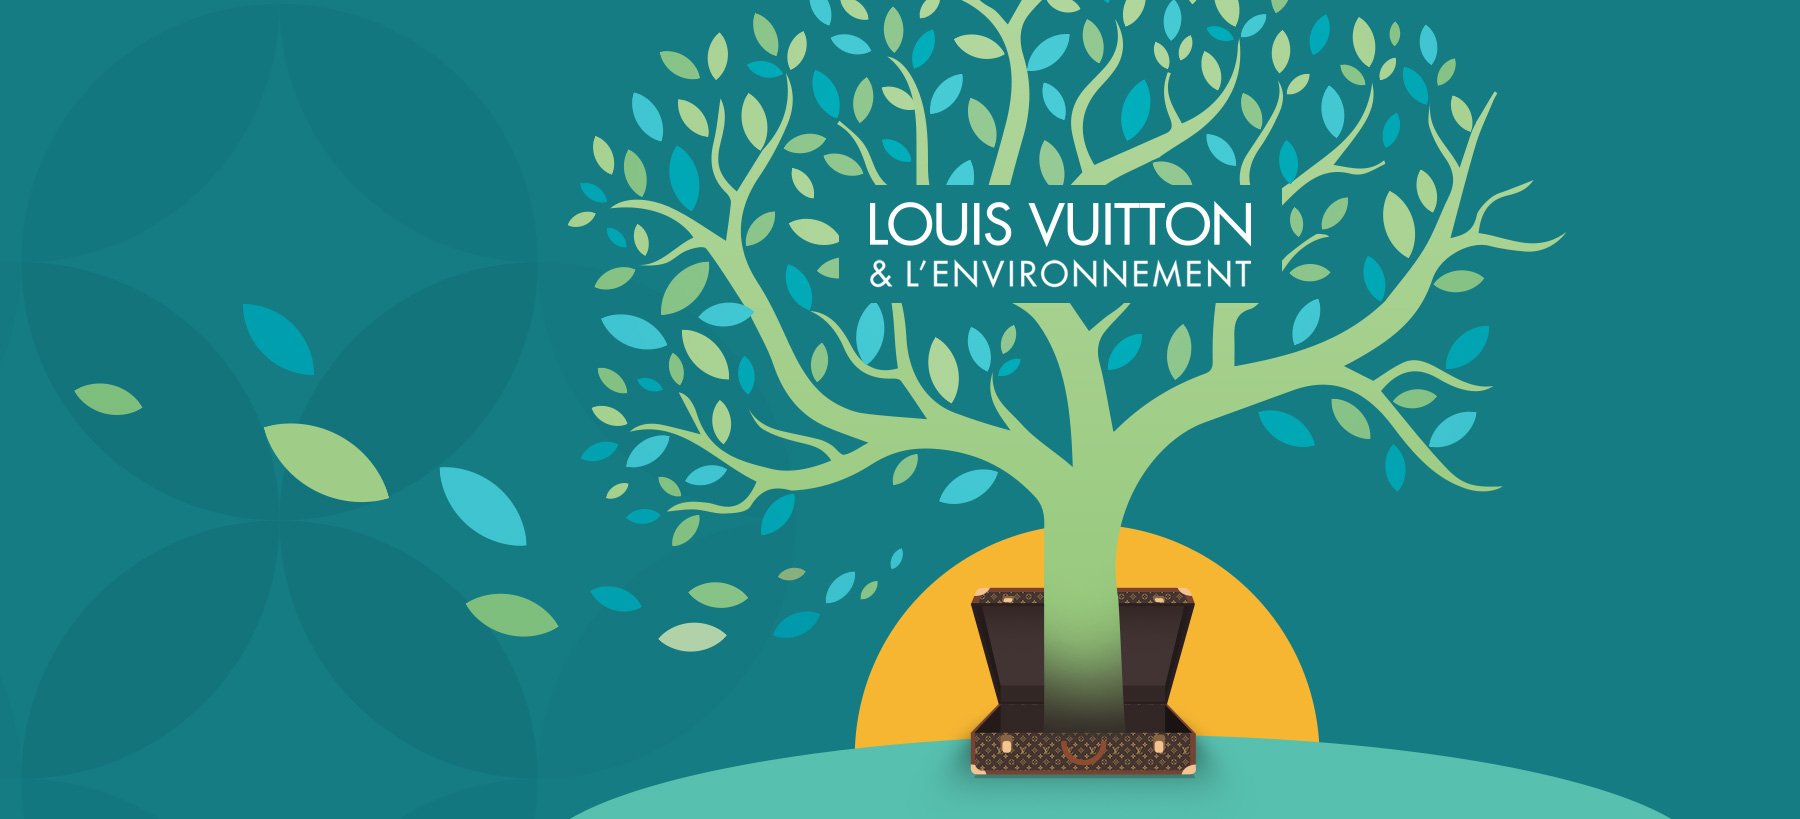 Directeur artistique freelance - Louis Vuitton - Site Internet